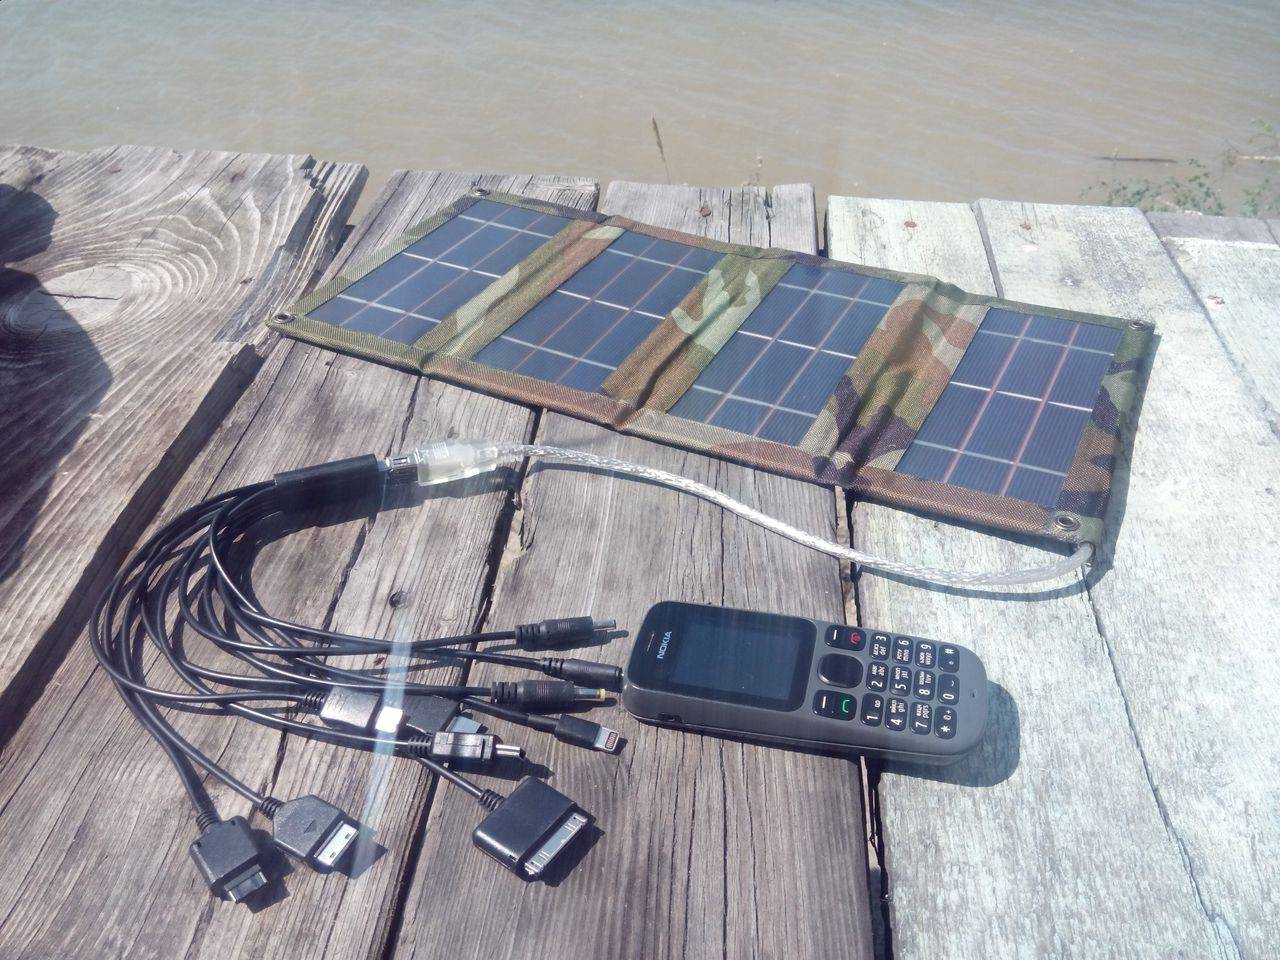 Как своими руками сделать универсальную usb зарядку для телефона с литий-ионным аккумулятором на солнечных батареях